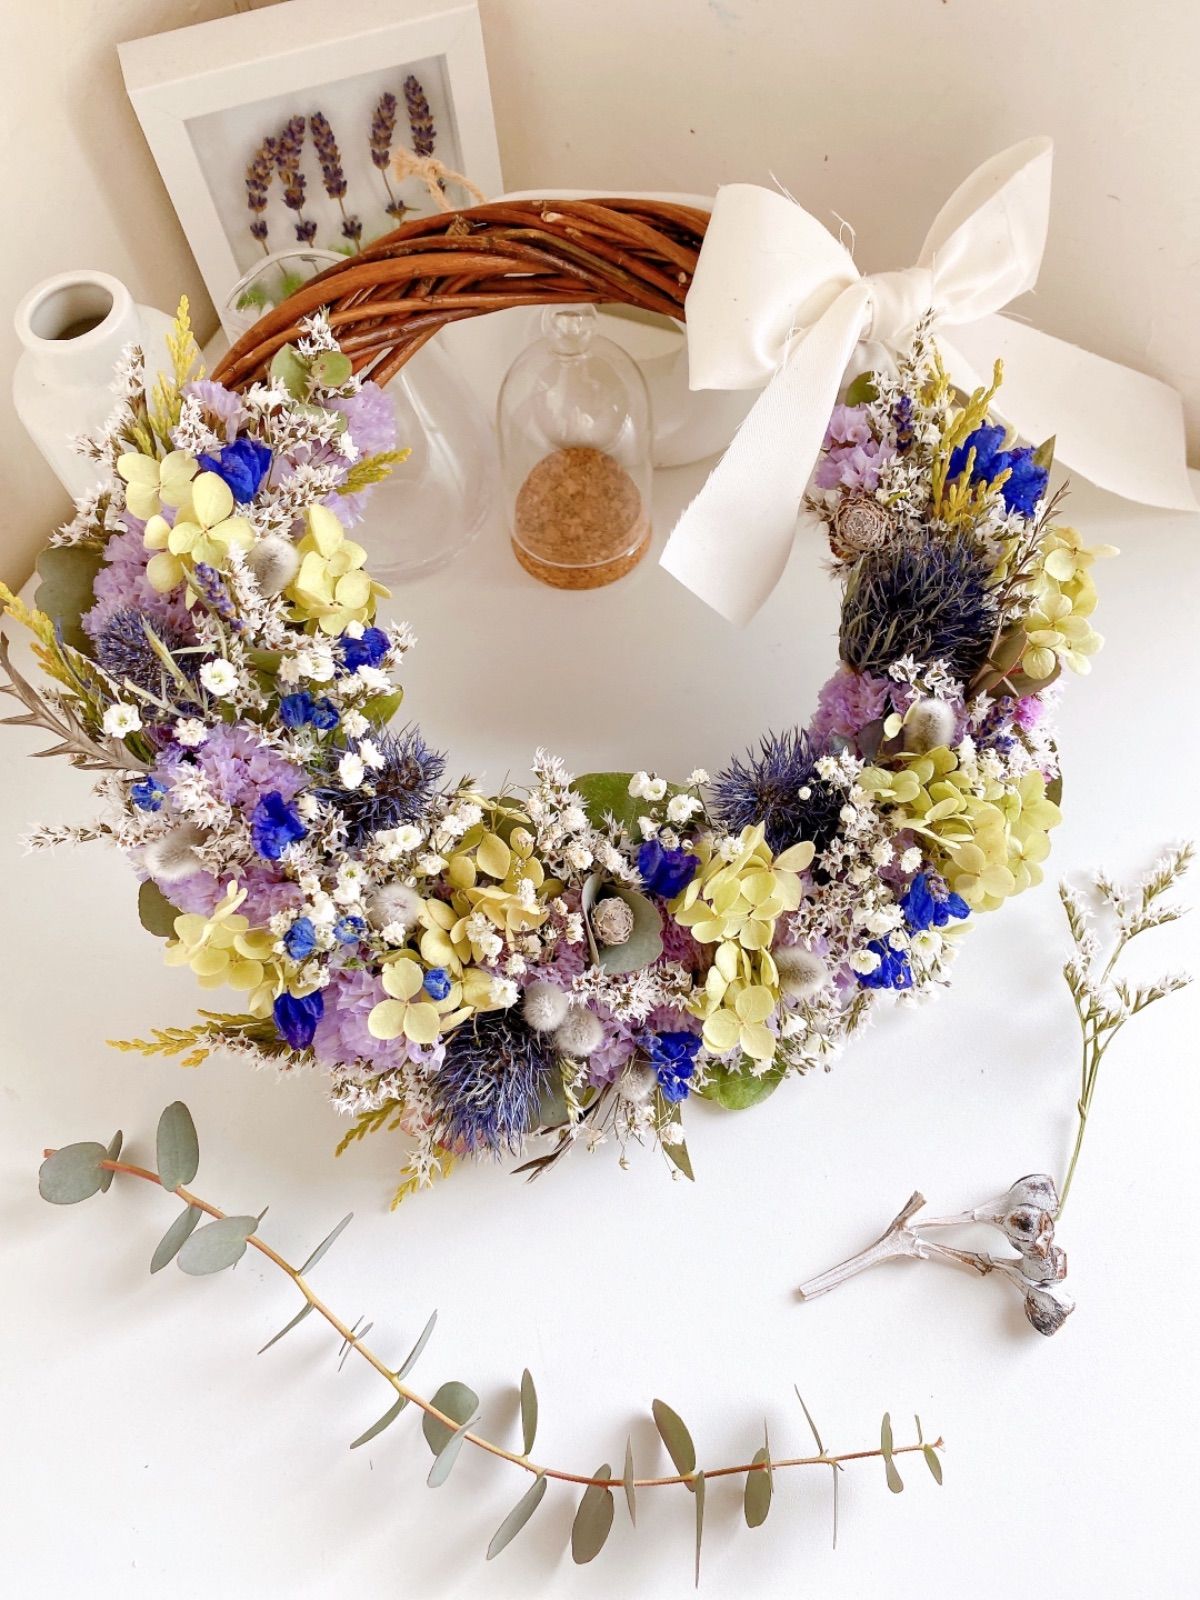 売れ筋サイト ブルー紫陽花とルリタマアザミのモコモコハーフリース フラワー/ガーデン